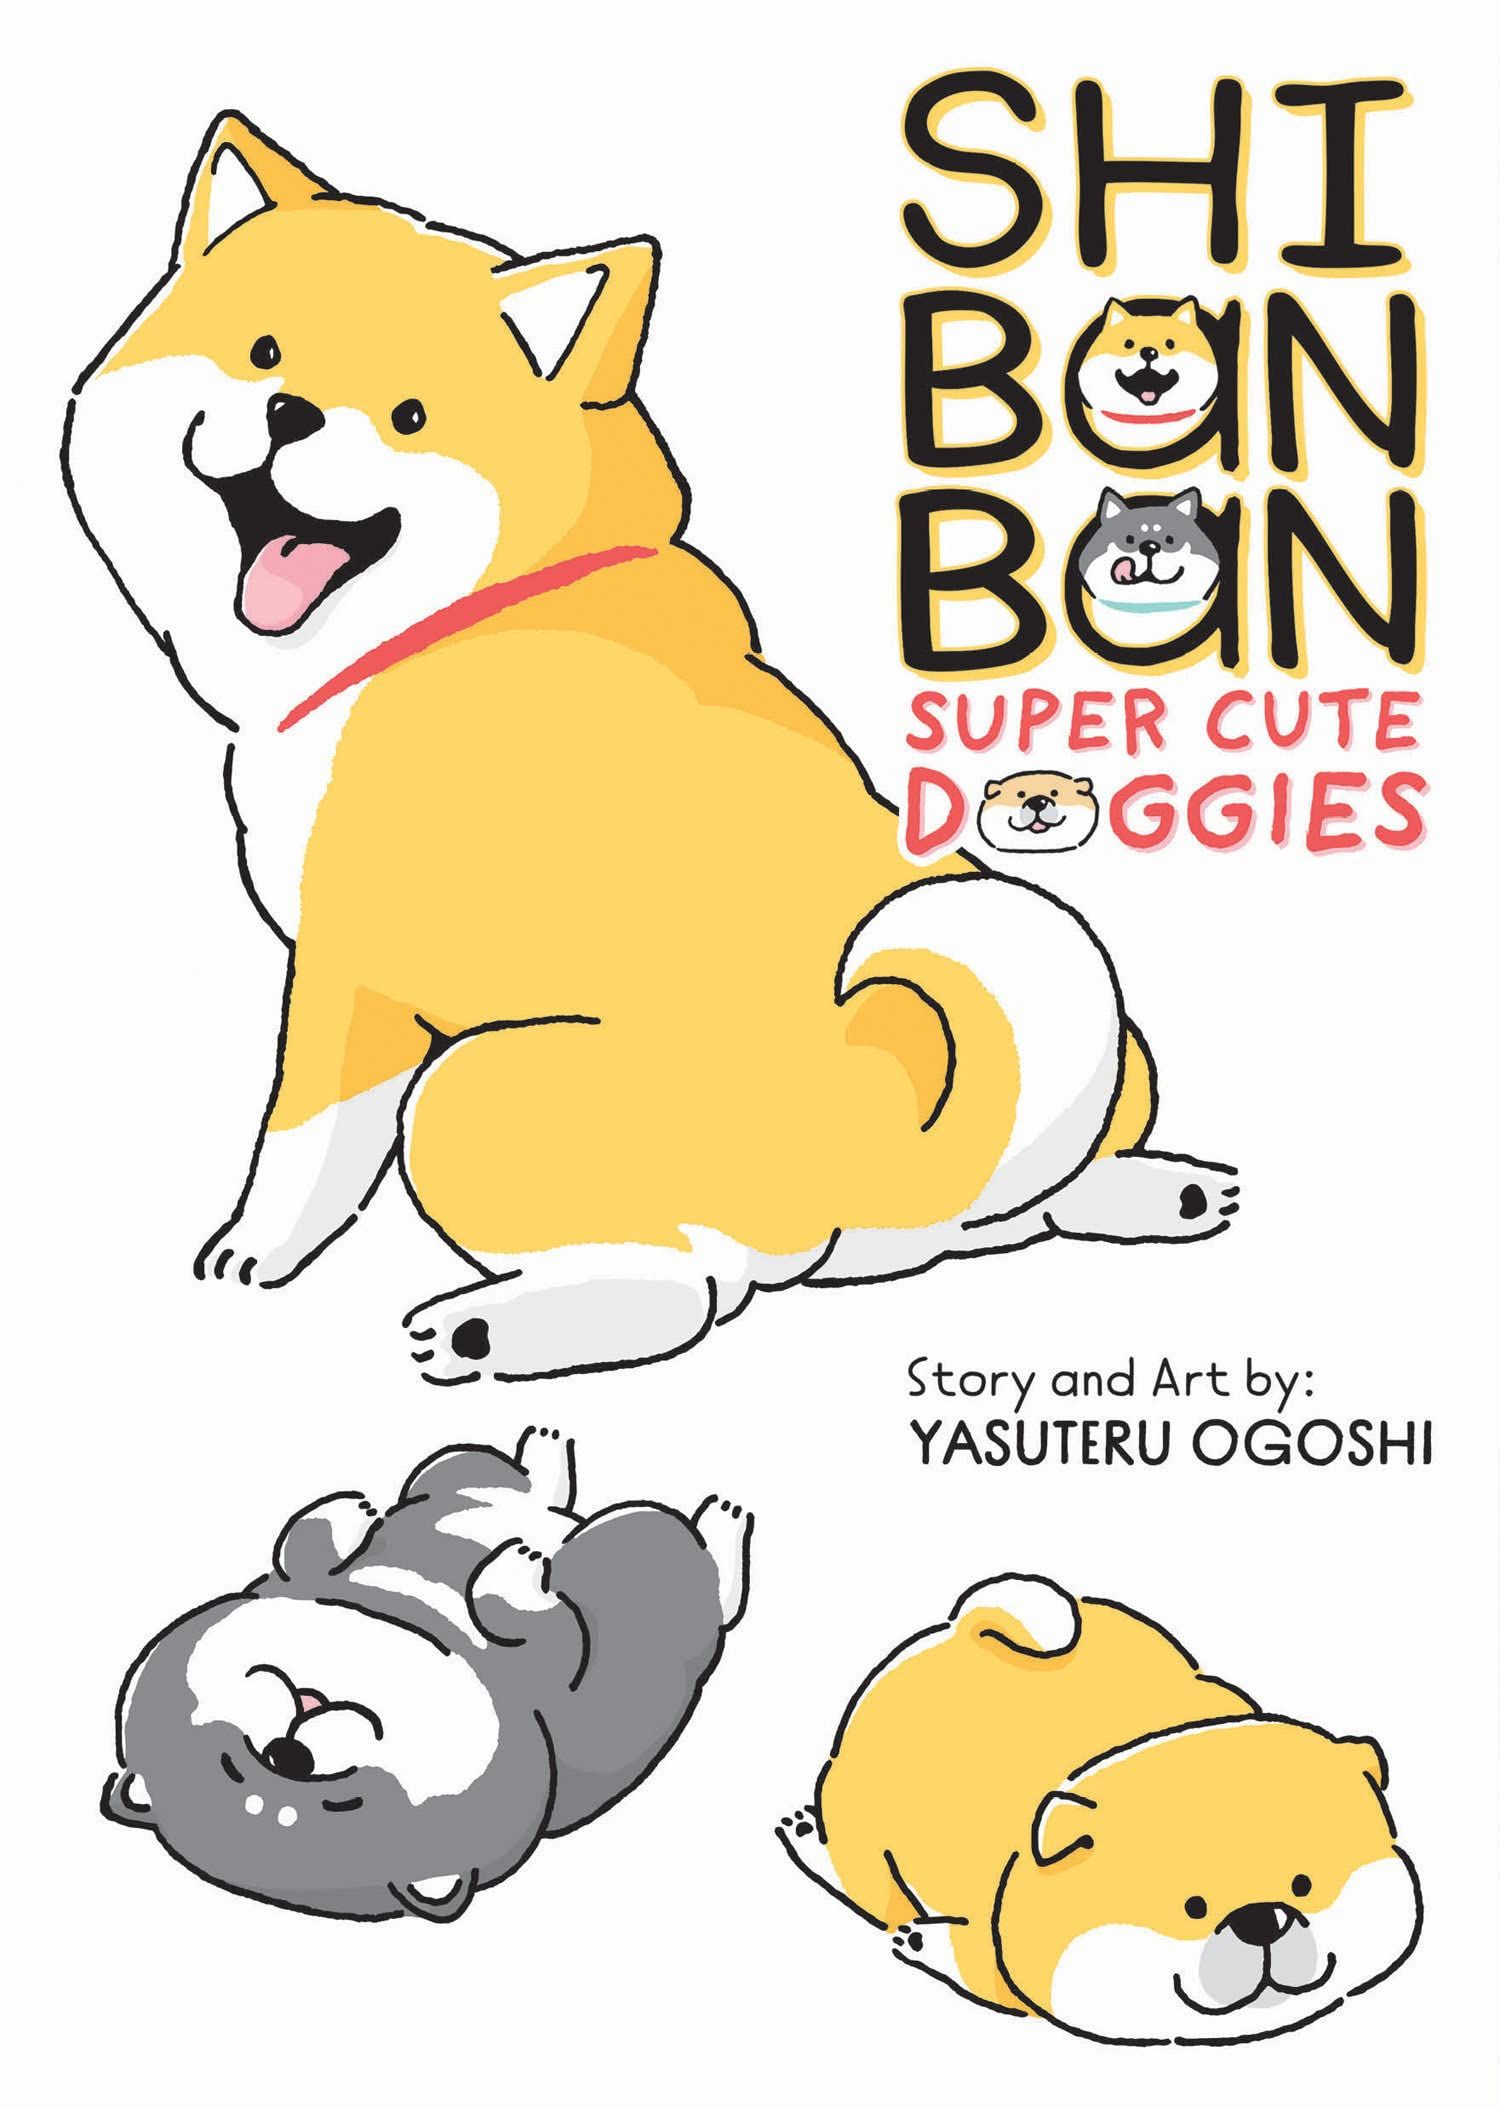 Shibanban: Super Cute Doggies by Yasuteru Ogoshi cover